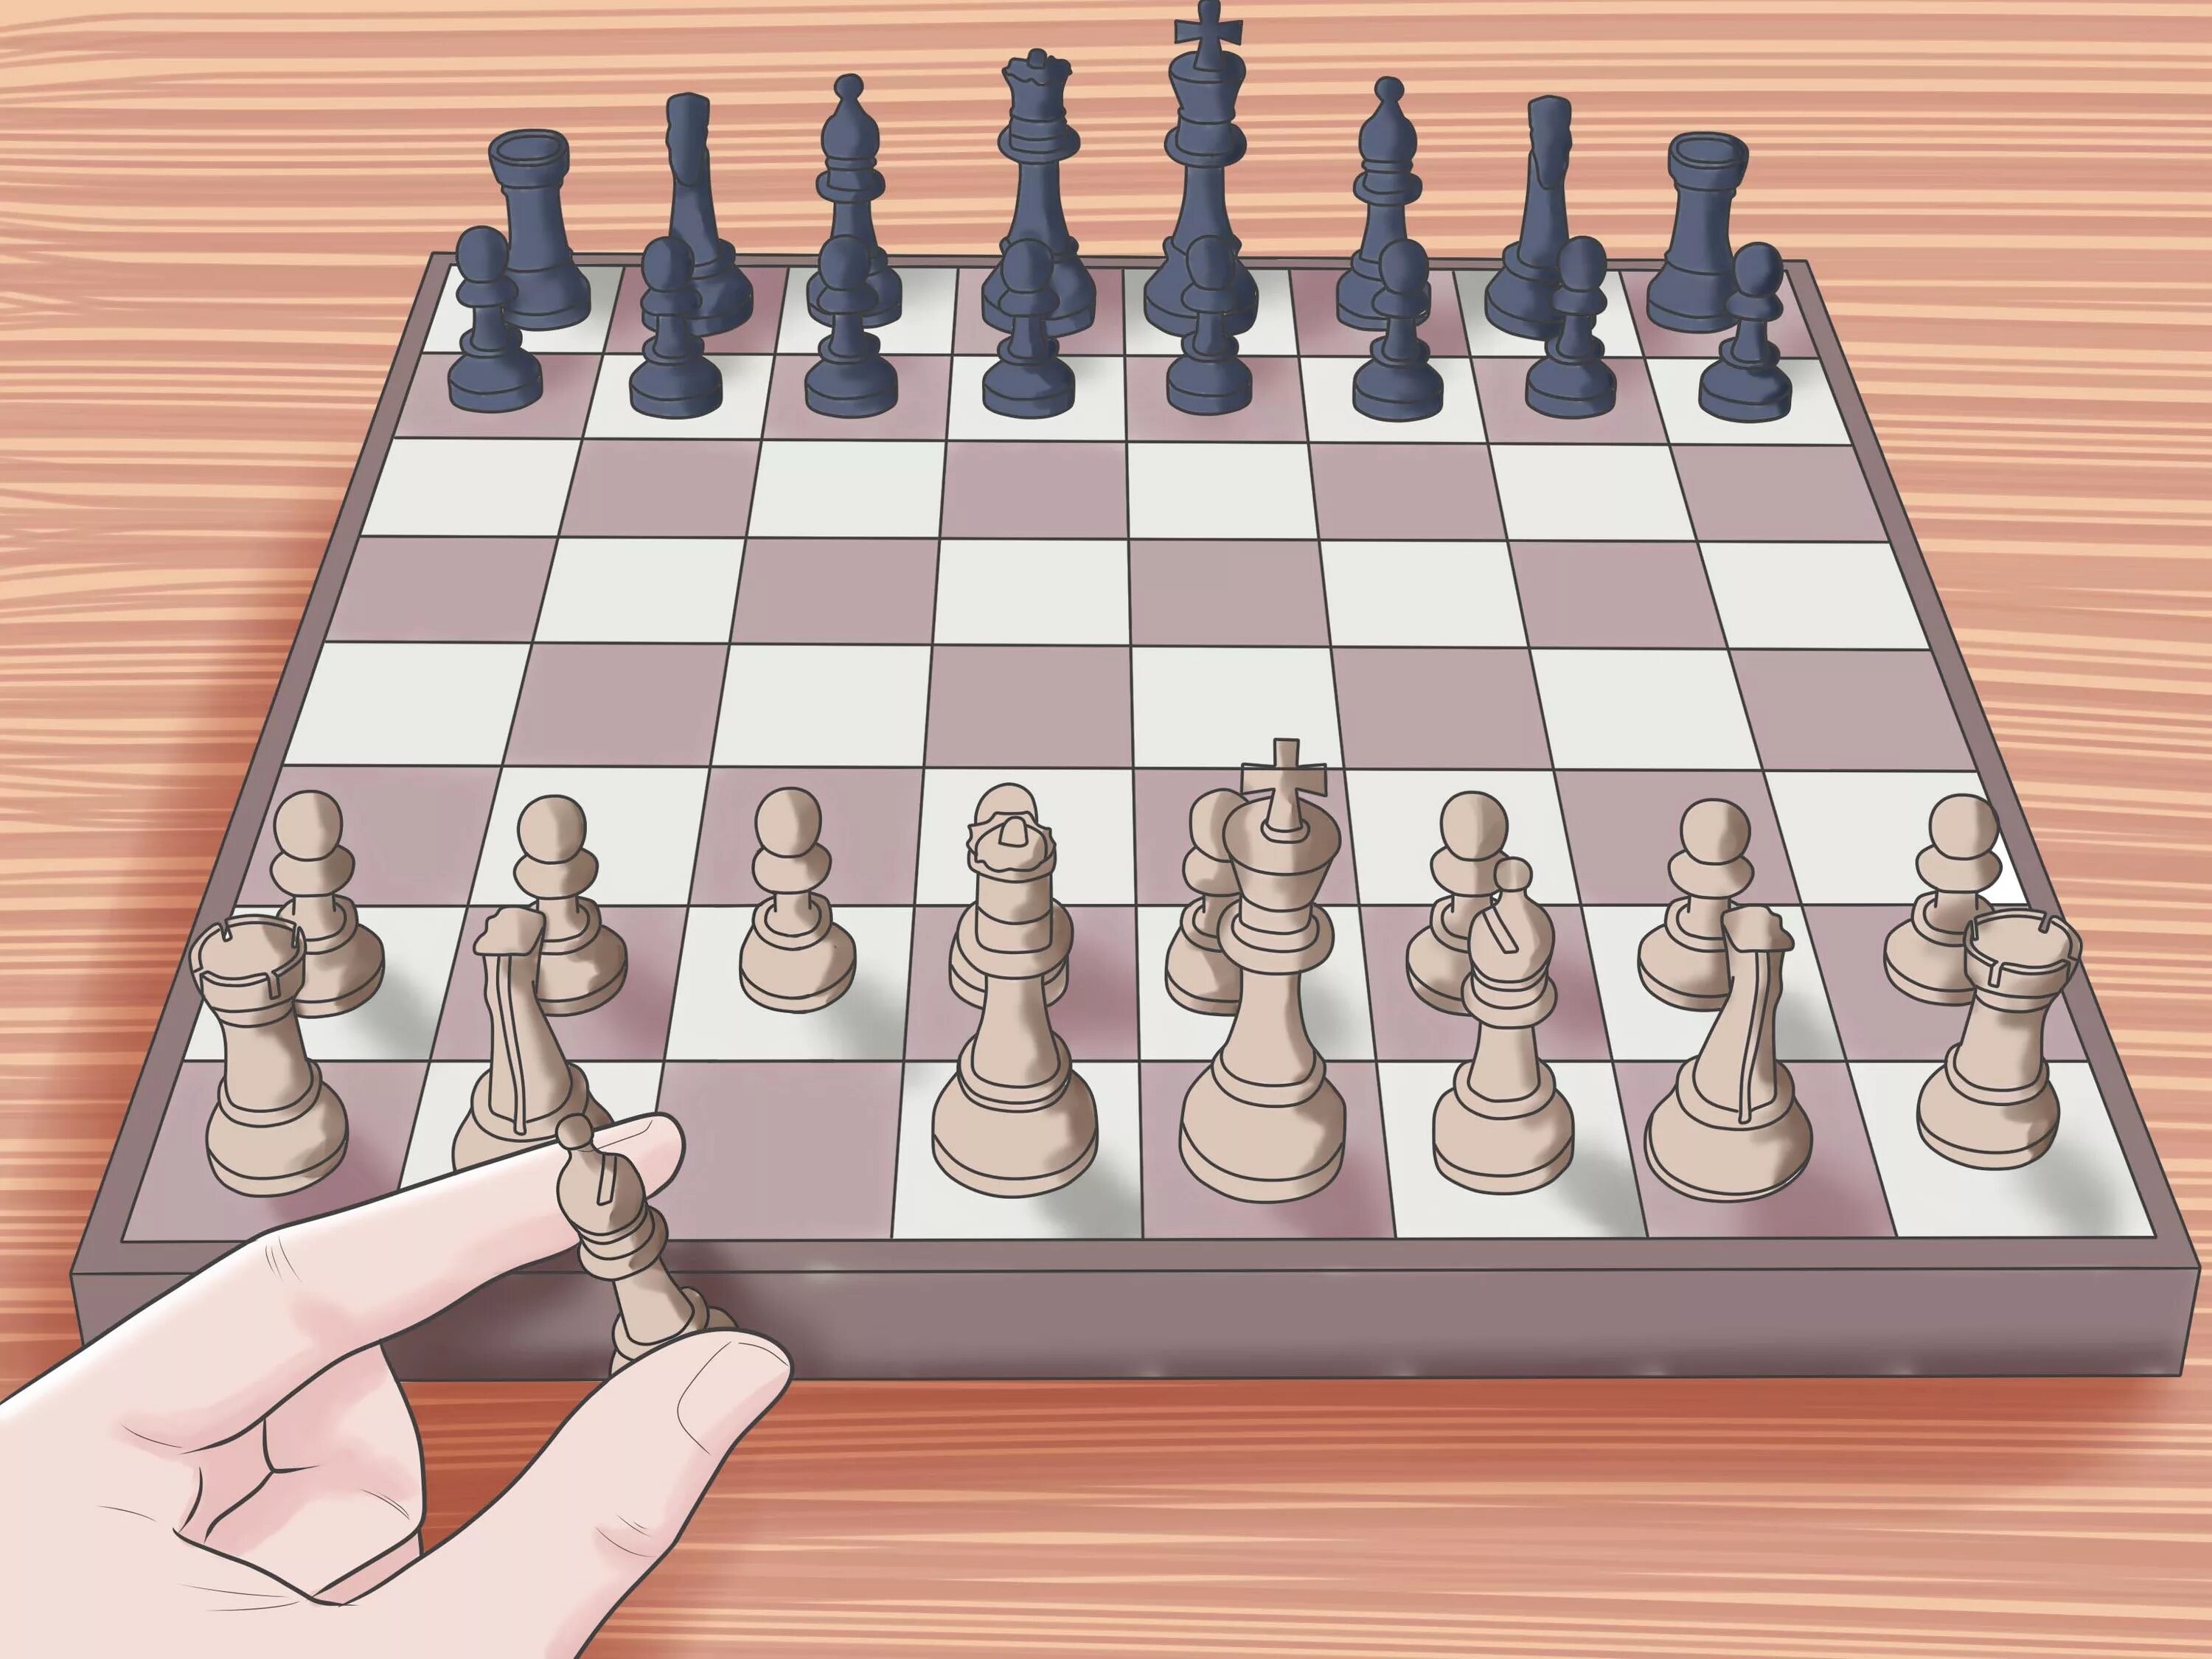 Поставь как нужно играть. Расстановка Шахматов. Шахматные фигуры. Расположение шахматной доски. Правильная расстановка шахмат.